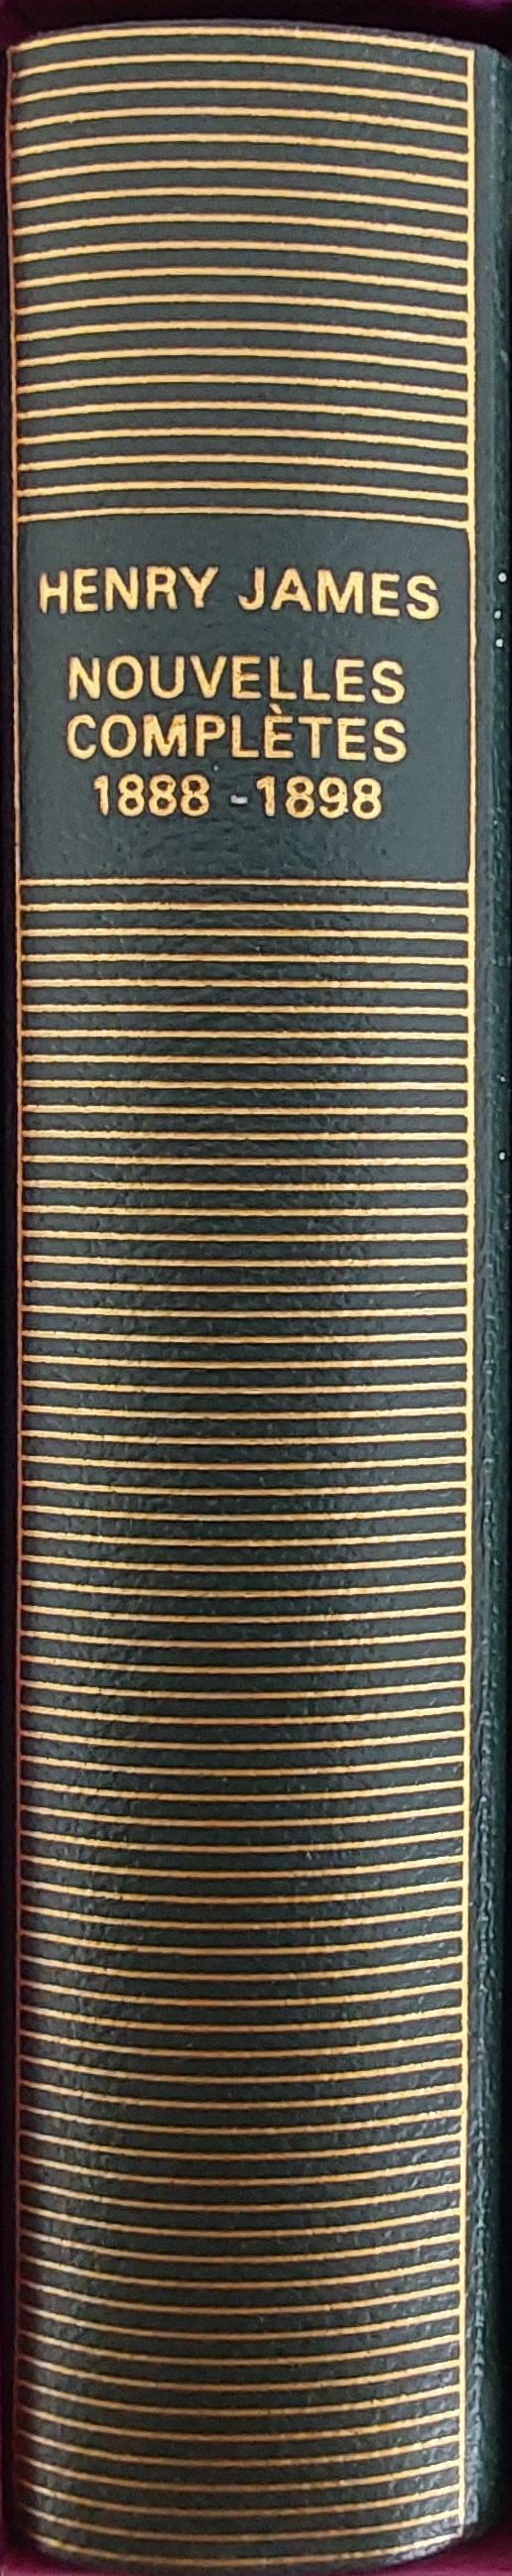 Volume 570 de Henry James dans la Bibliothèque de la Pléiade